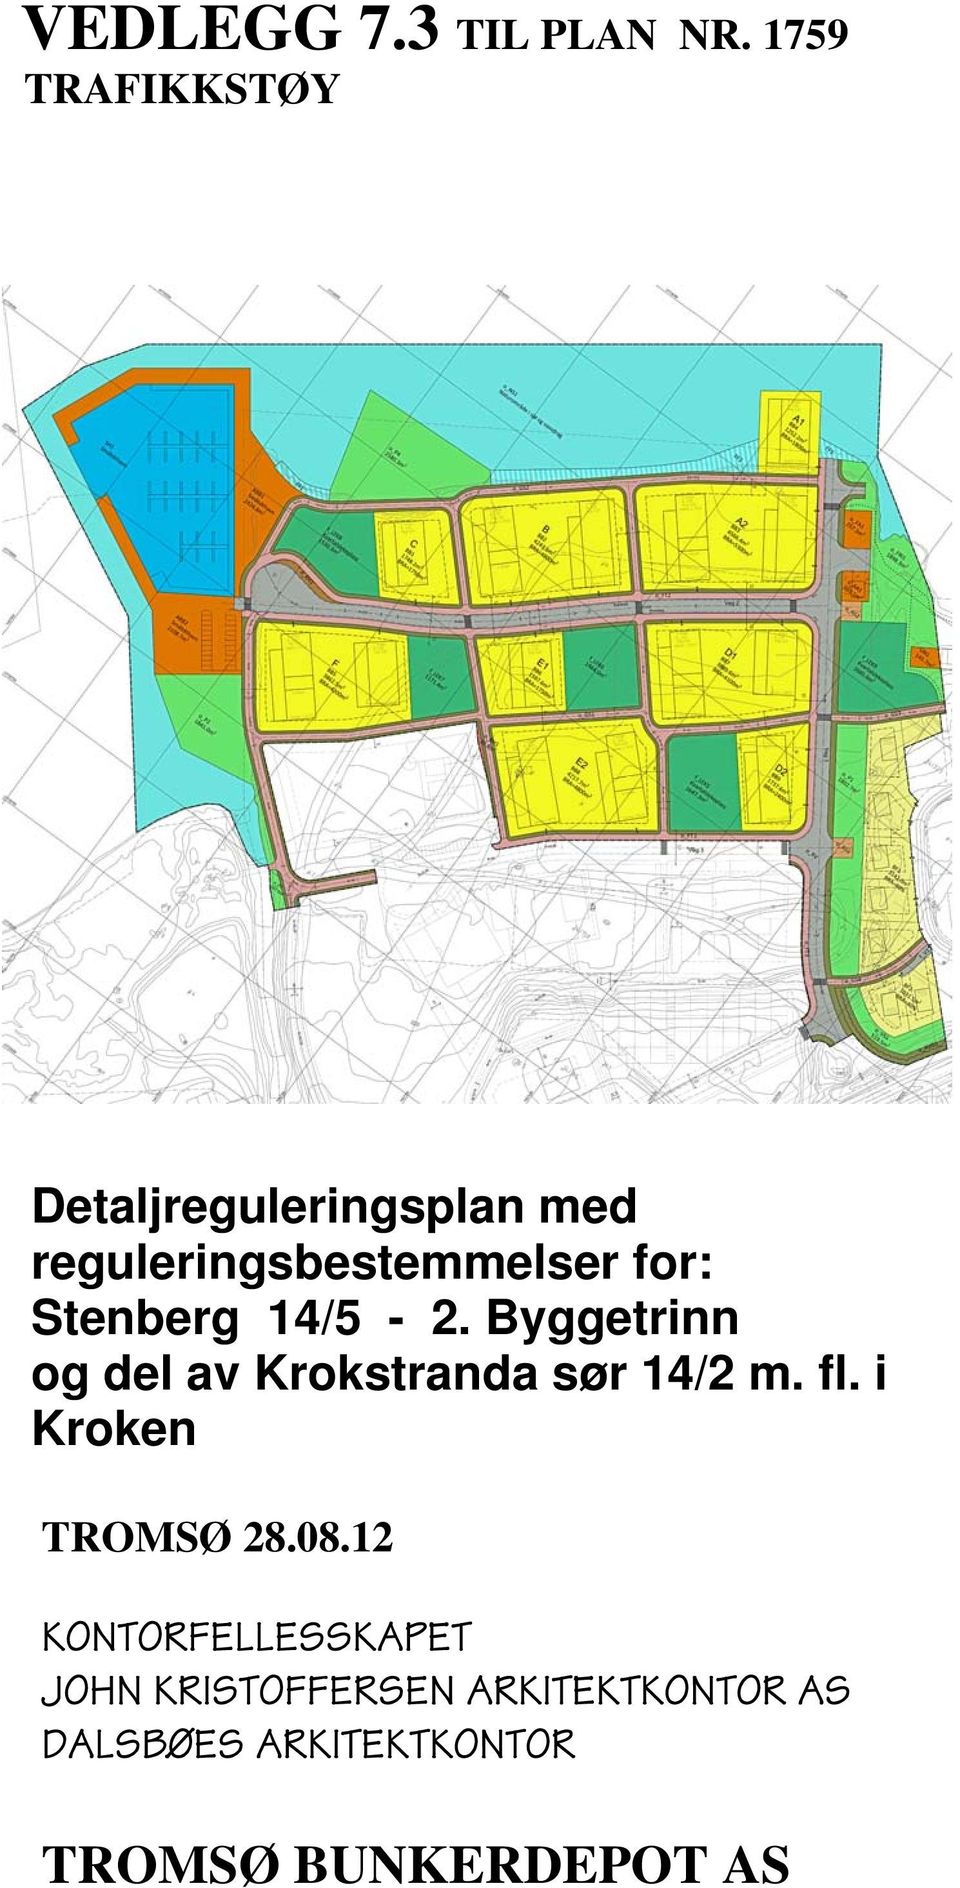 Stenberg 14/5-2. Byggetrinn og del av Krokstranda sør 14/2 m. fl.